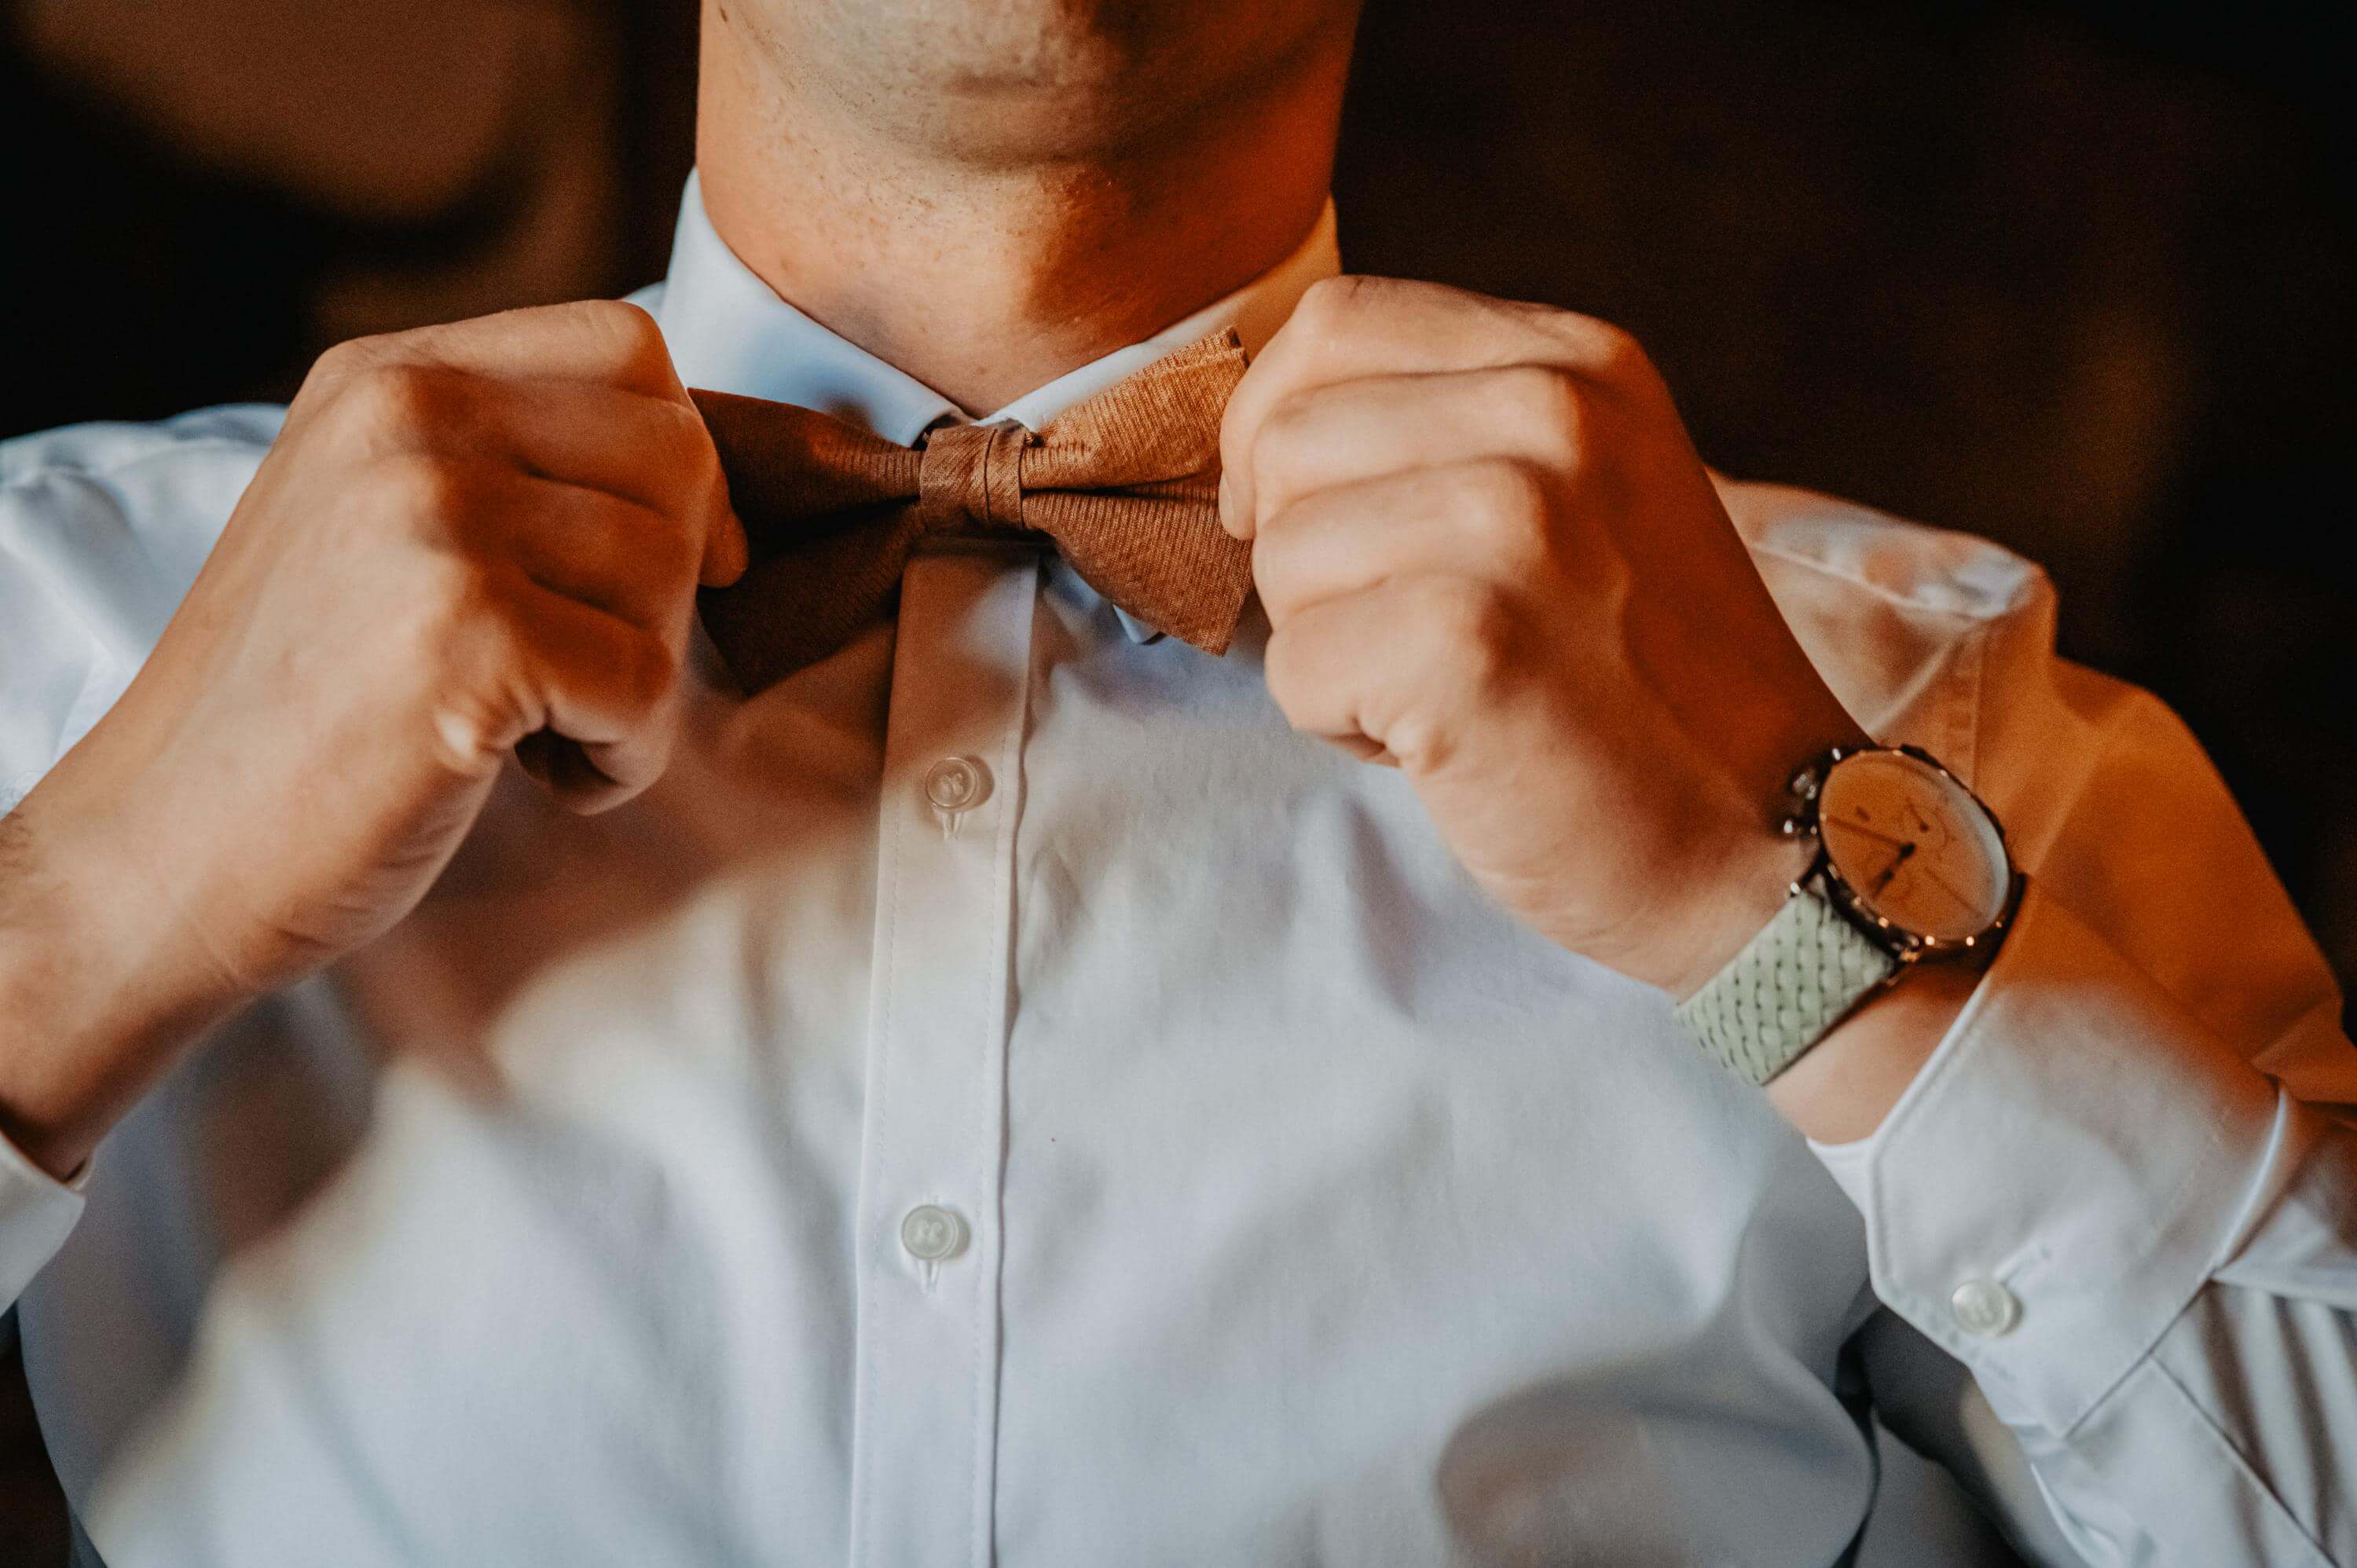 Klassische Nahaufnahme beim Getting Ready des Oberkörpers des Bräutigams im weißen Hemd und mit Armbanduhr, der sich seine Fliege am Hals mit beiden Händen gerade richtet.